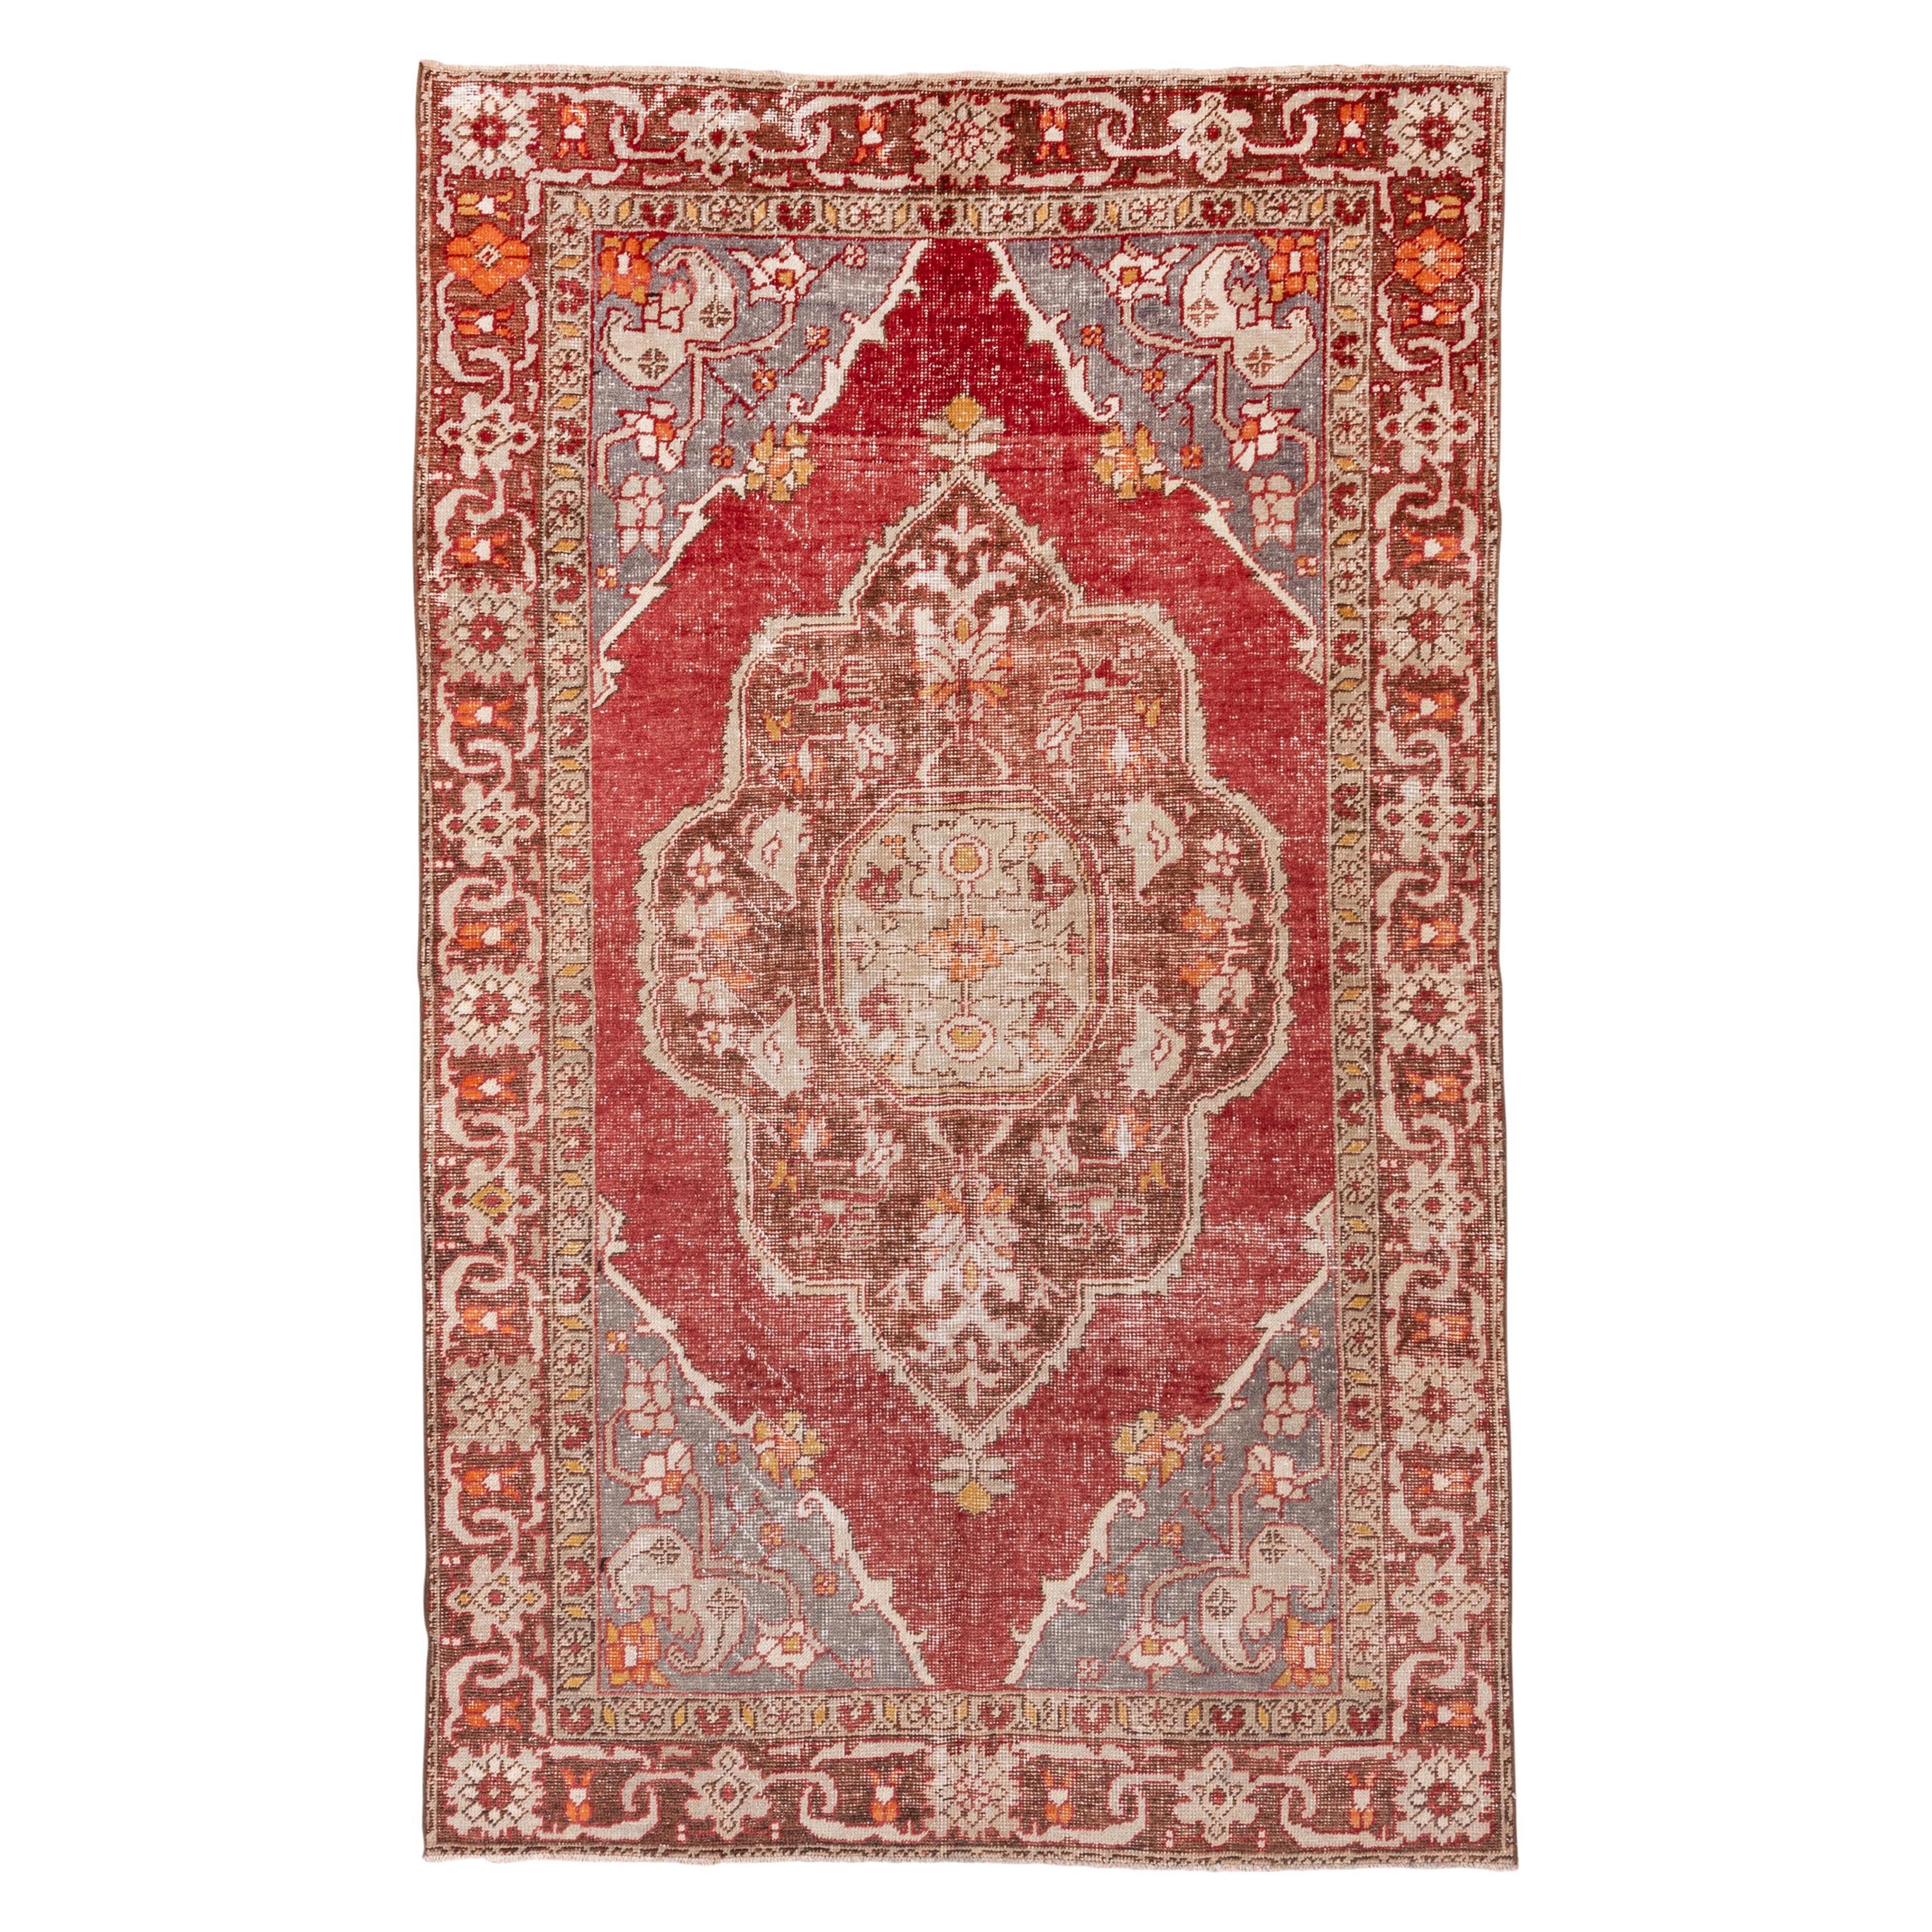 Antiker türkischer Oushak-Teppich, rot, grau und braun, mit Even Wear